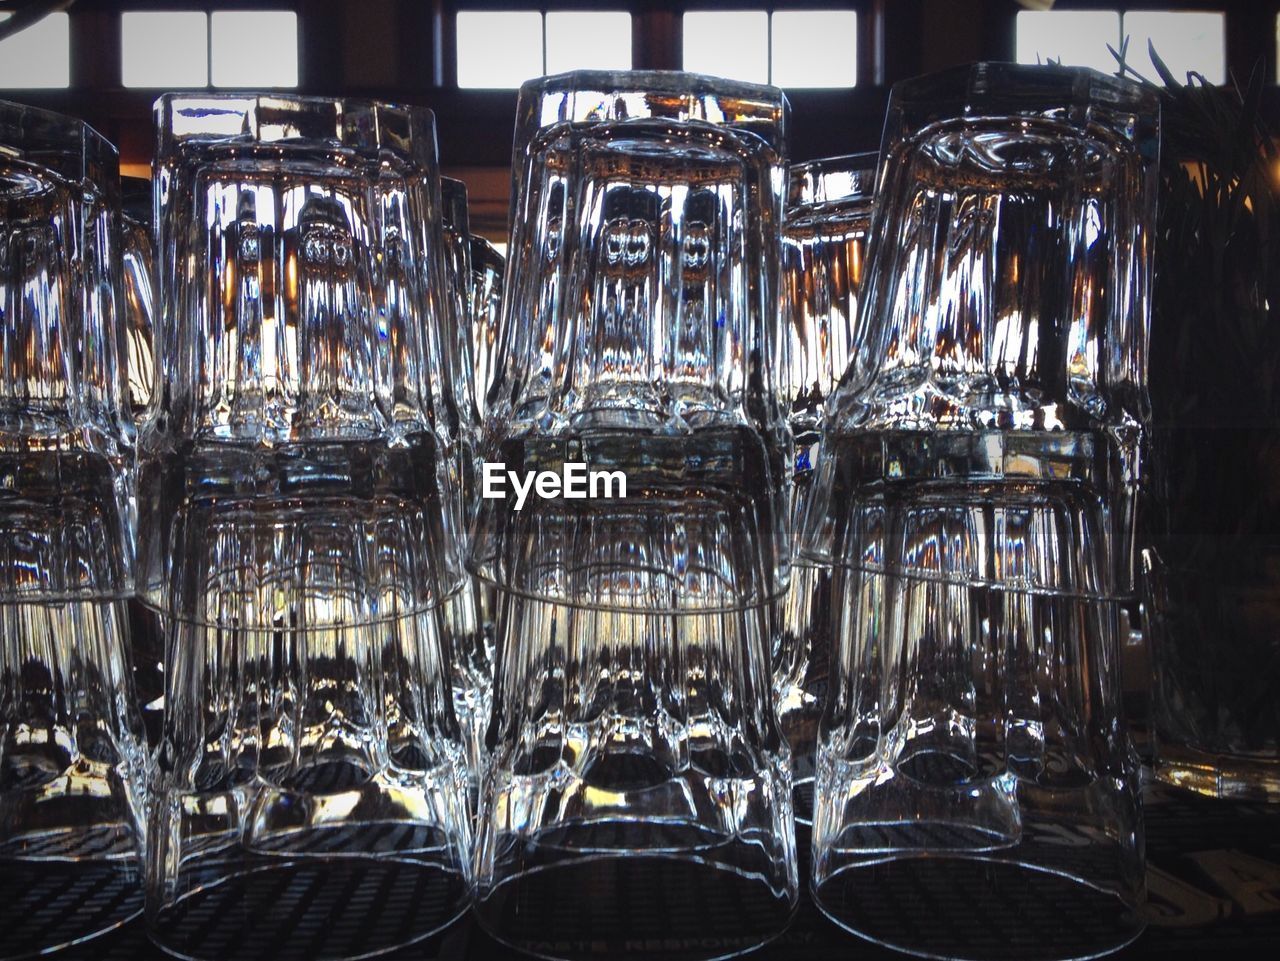 Drinking glasses in restaurant